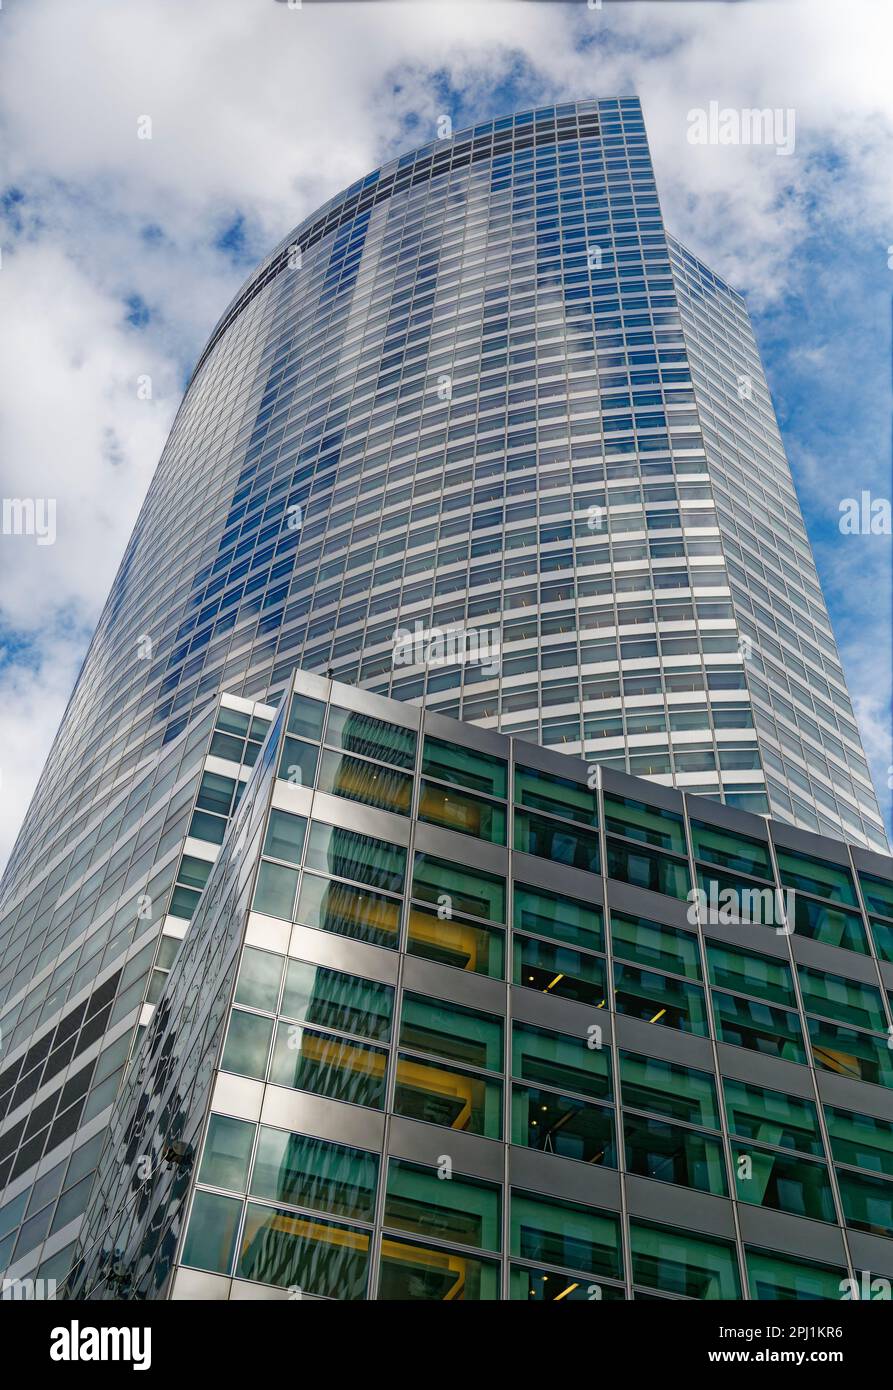 200 West Street, Goldman Sachs Hauptquartier, ist das höchste Gebäude in Manhattans Battery Park City. Auch die gebogene Fassade ist bemerkenswert. Stockfoto